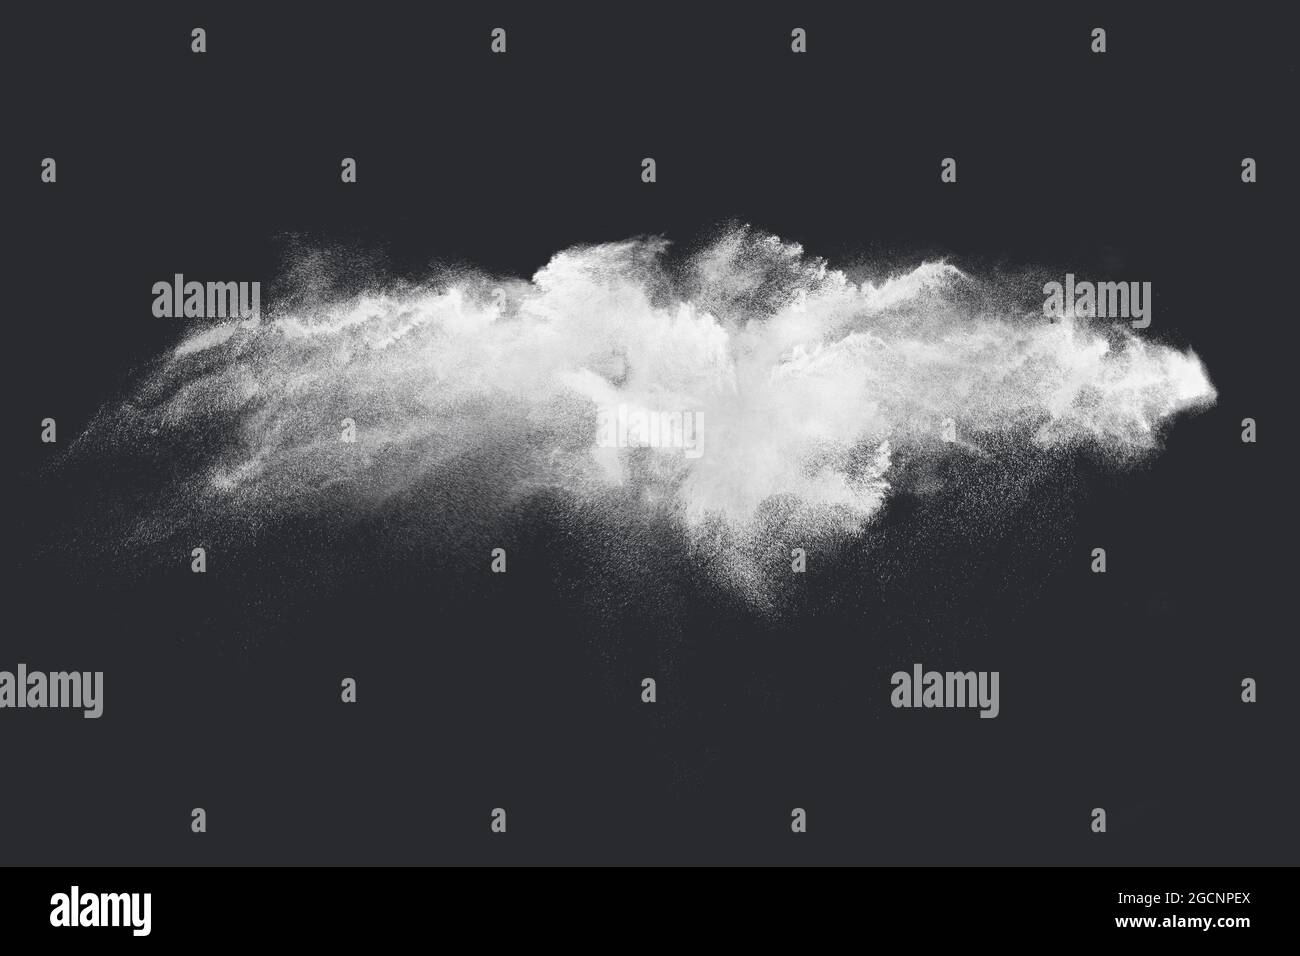 Diseño abstracto de nube de nieve polvo blanco sobre fondo oscuro de explosión Foto de stock